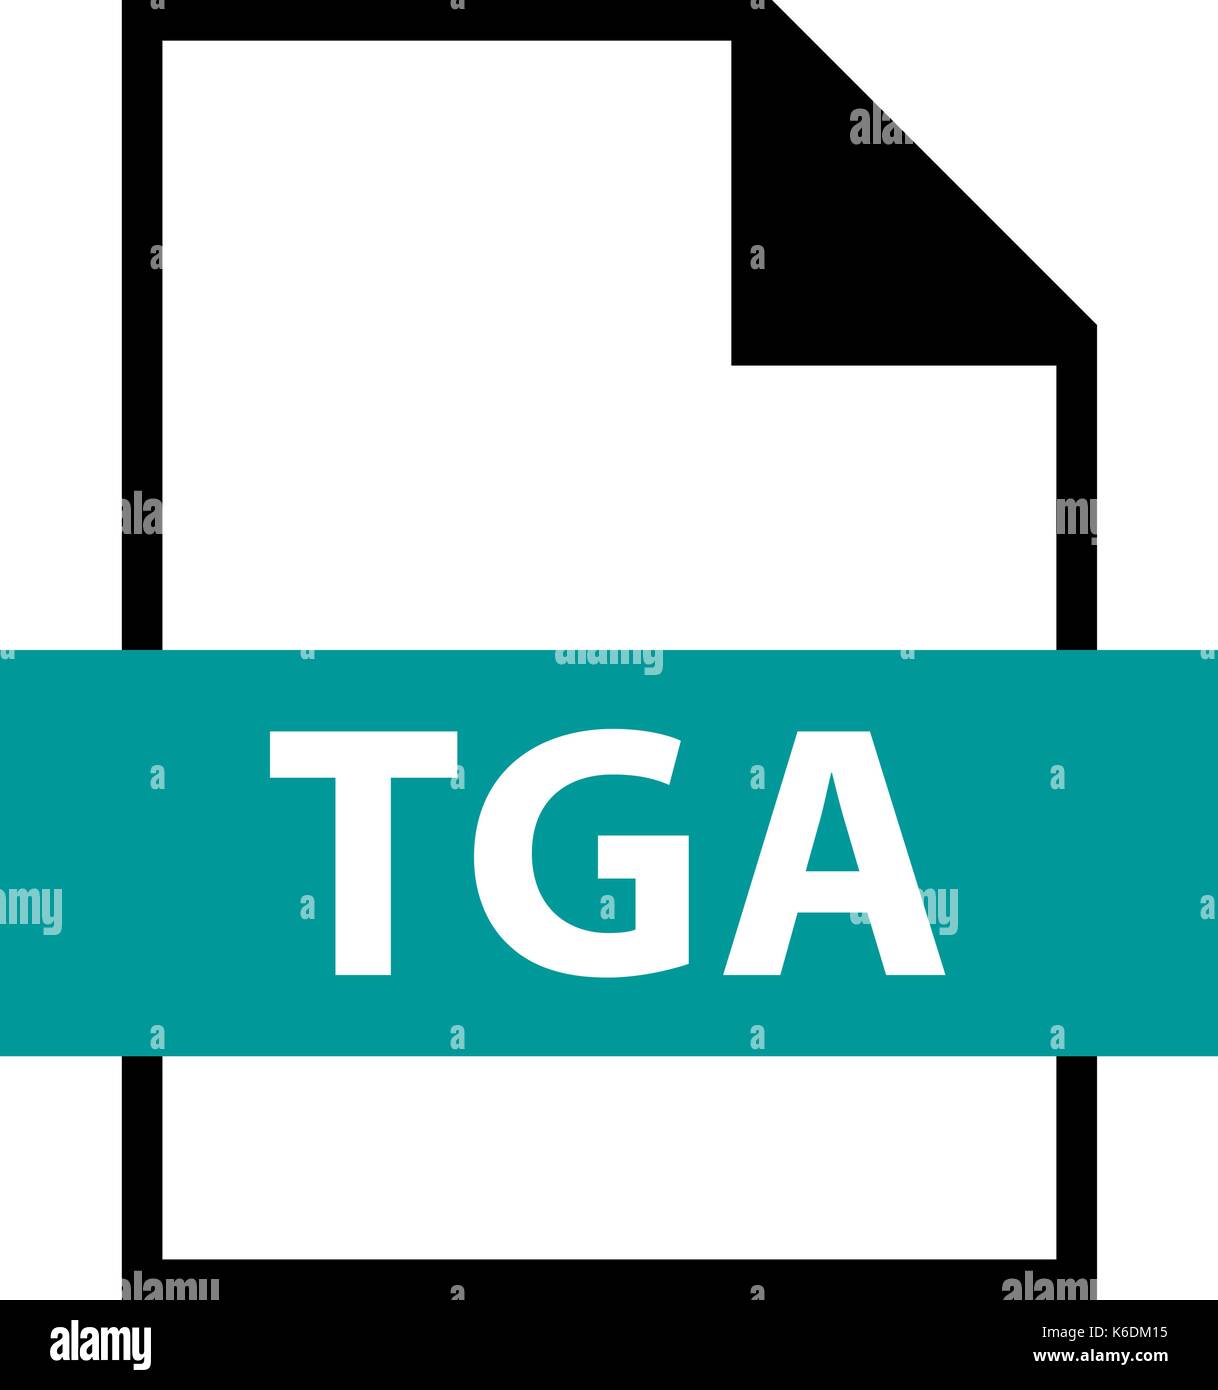 Es in allen ihren Designs verwenden. Dateinamenerweiterung Symbol TGA Truevision Graphics Adapter im flachen Stil. Schnelle und einfache recolorable Form. Stock Vektor